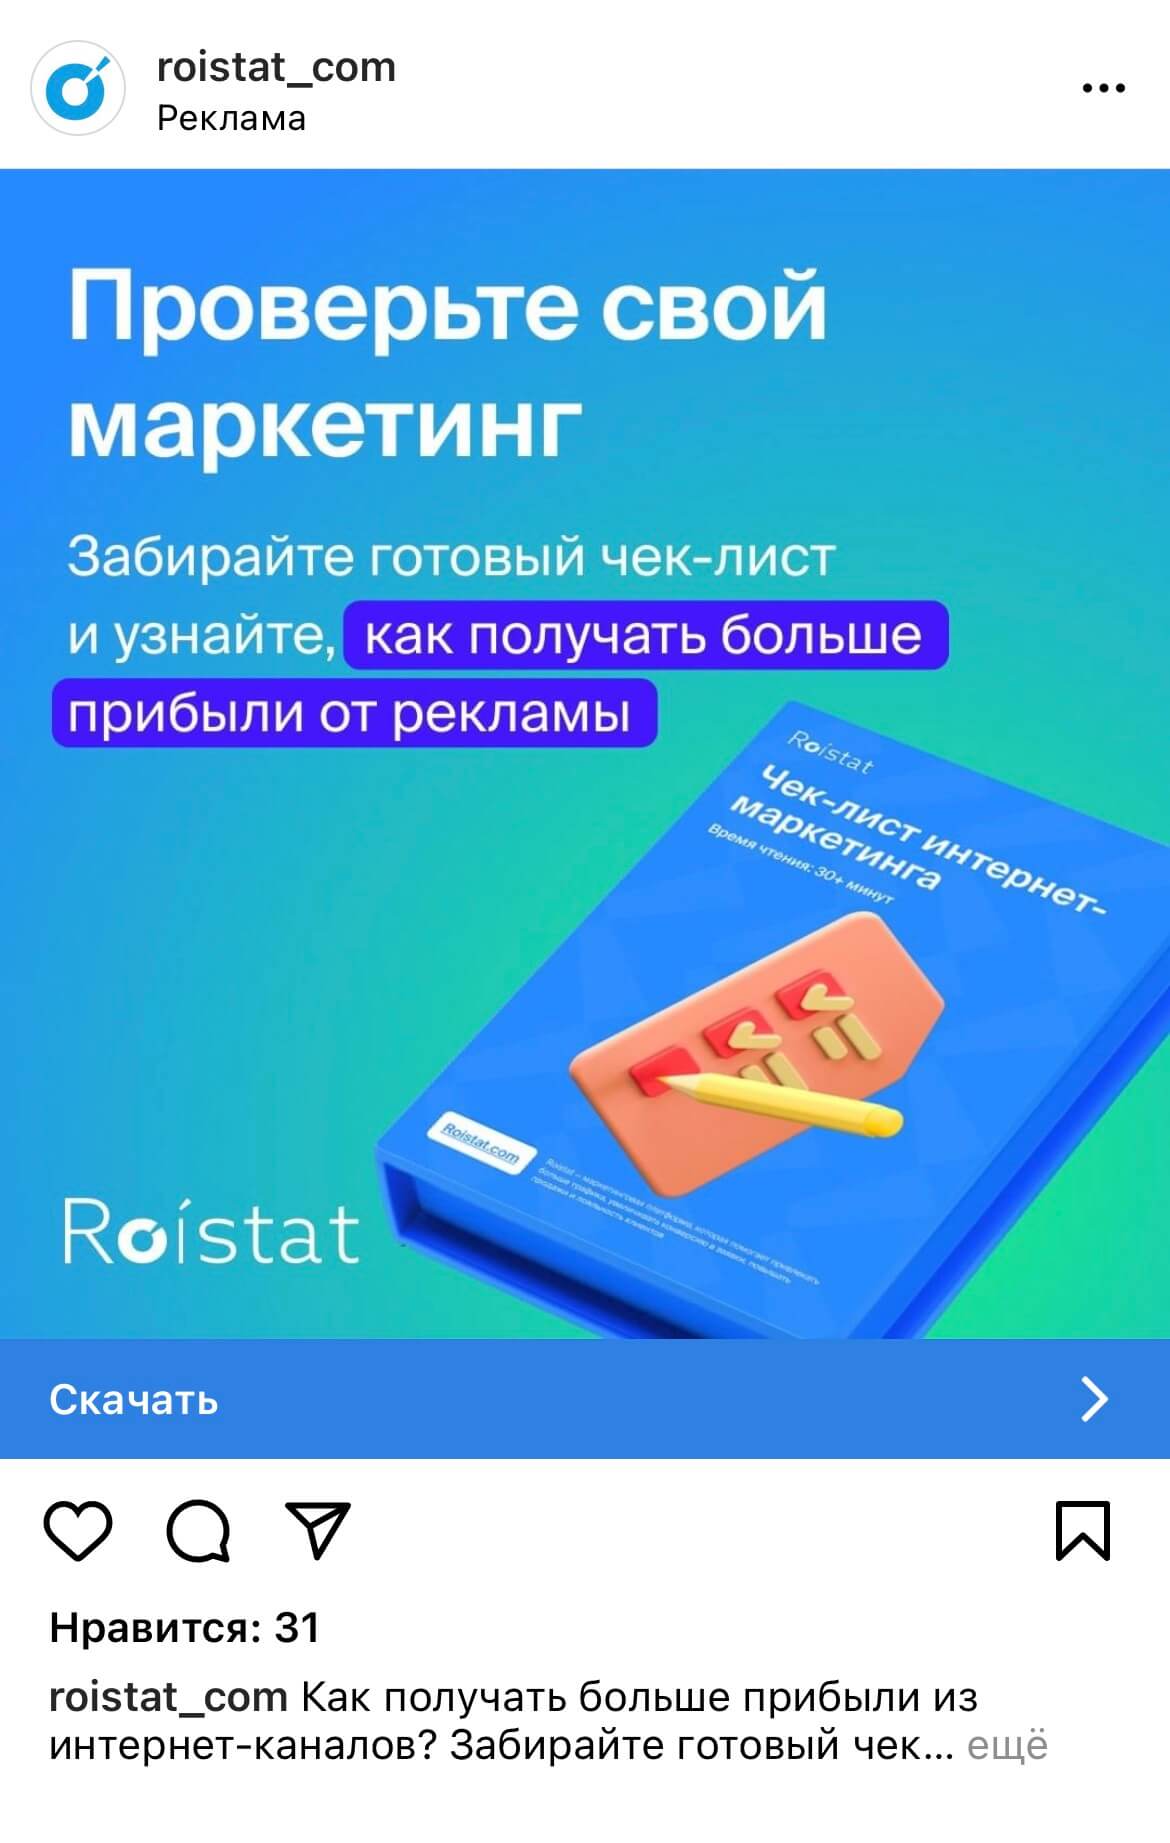 Рекламный пост маркетинговой платформы Roistat в Instagram